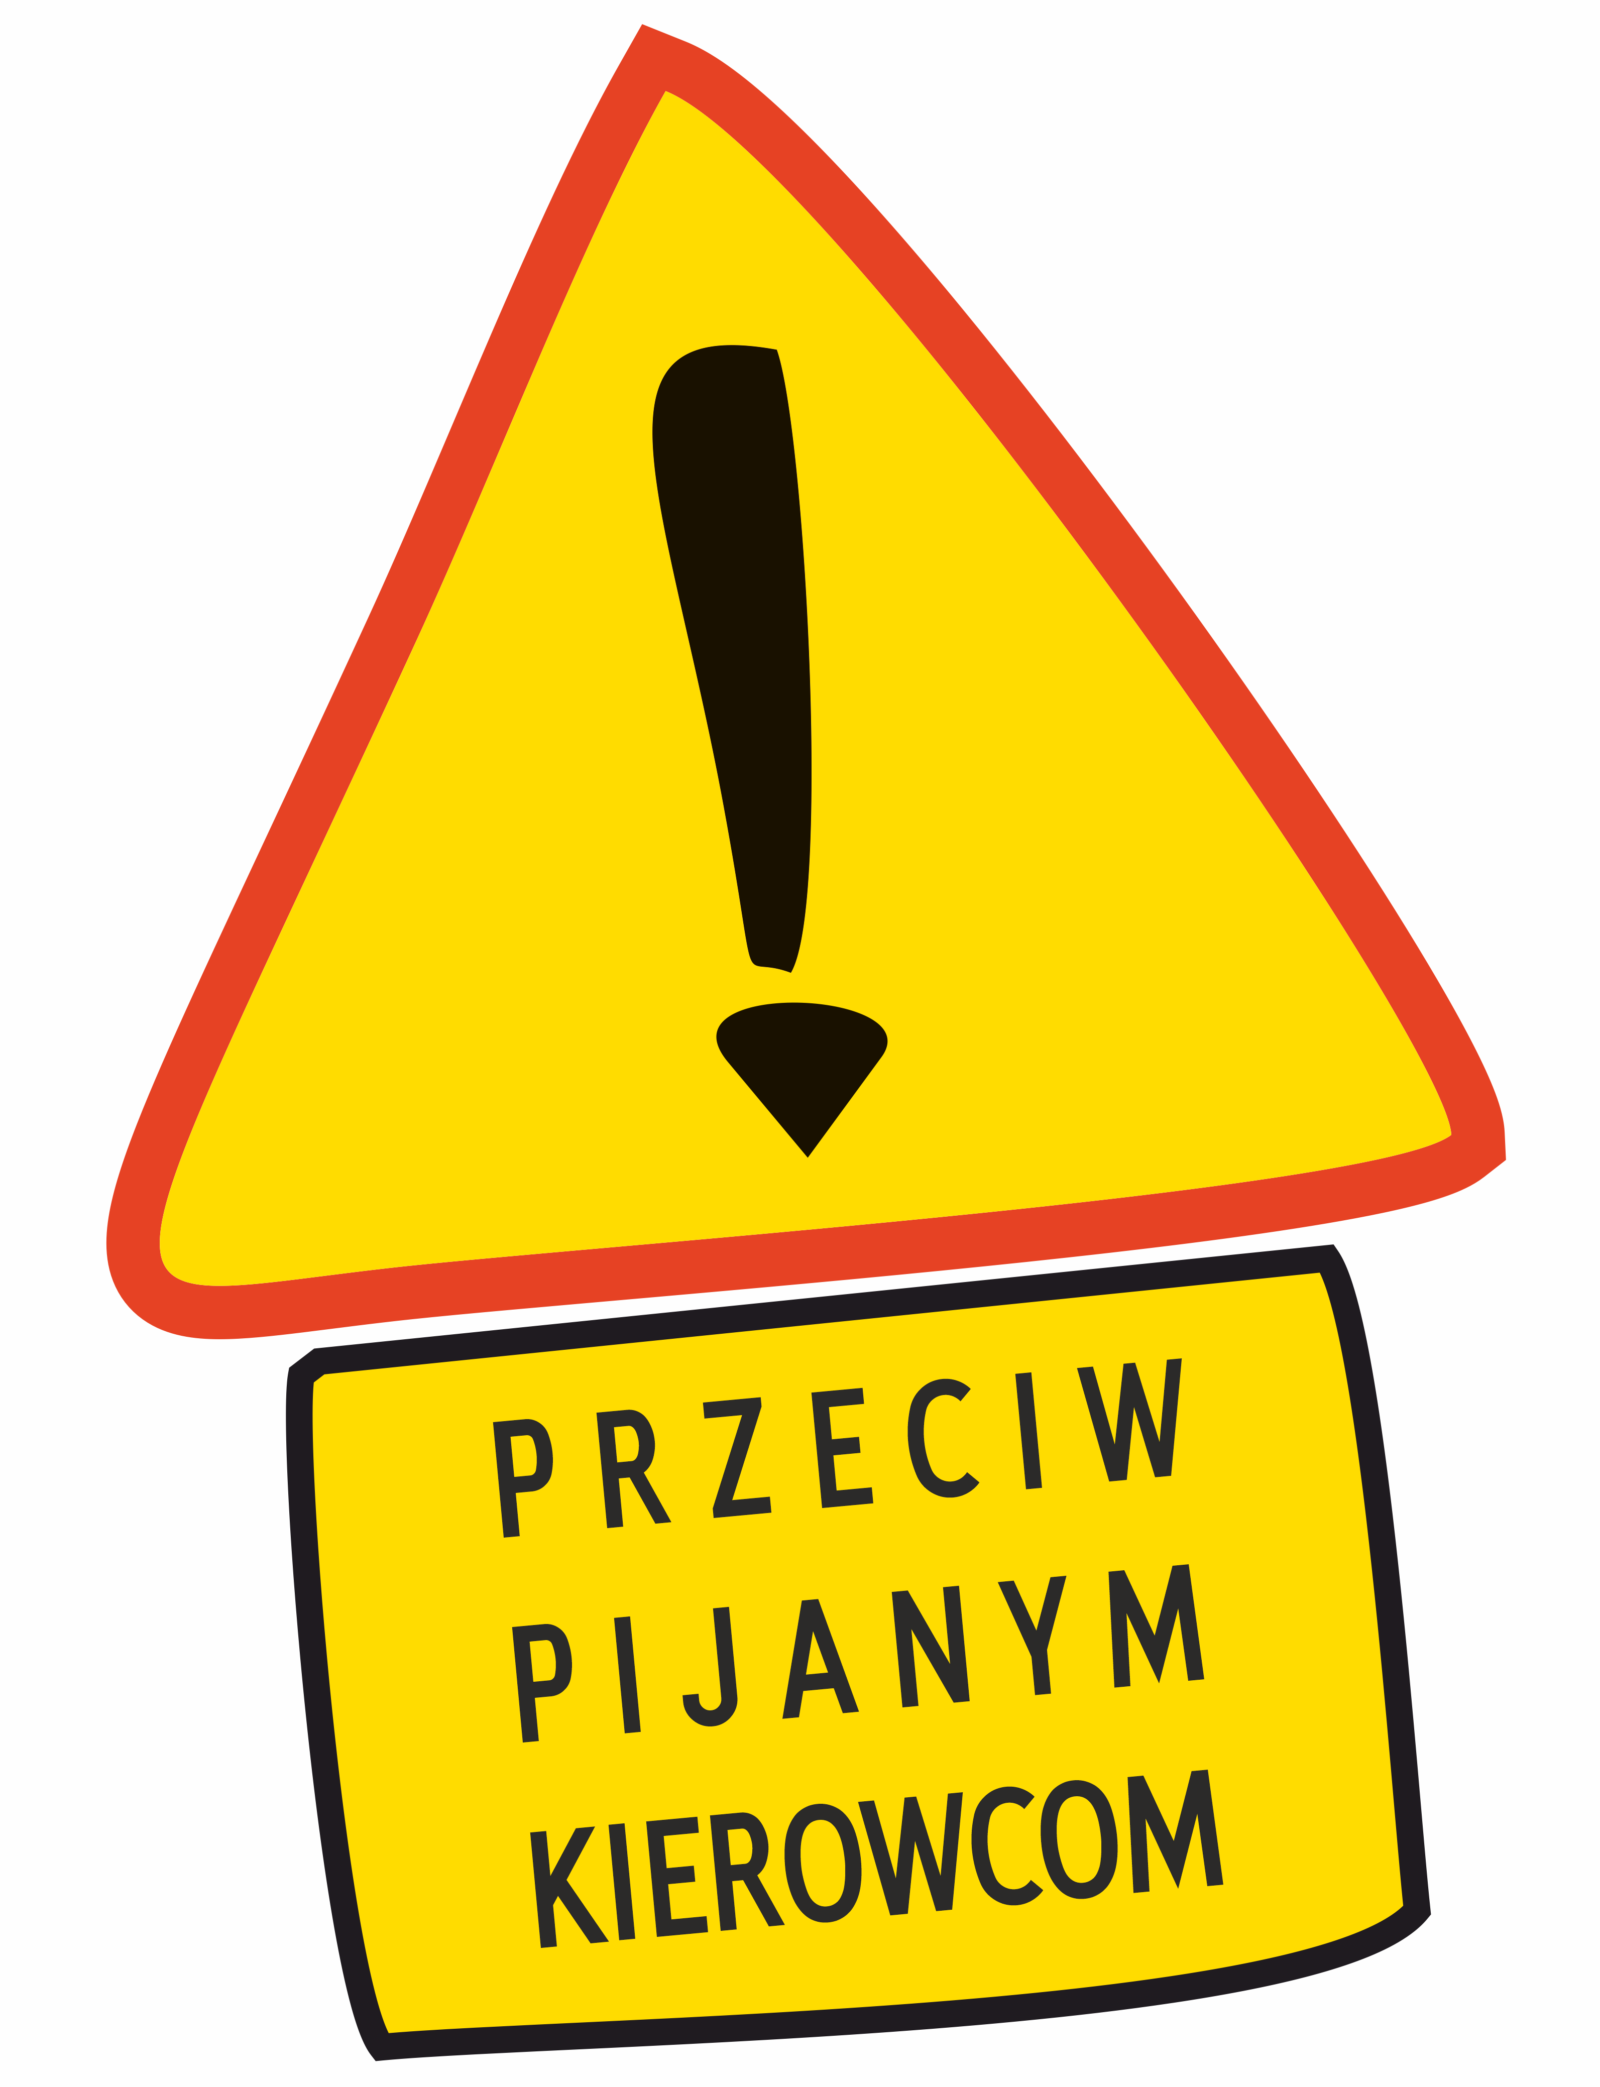 Znak z tabliczką i napisem "przeciw pijanym kierowcom"